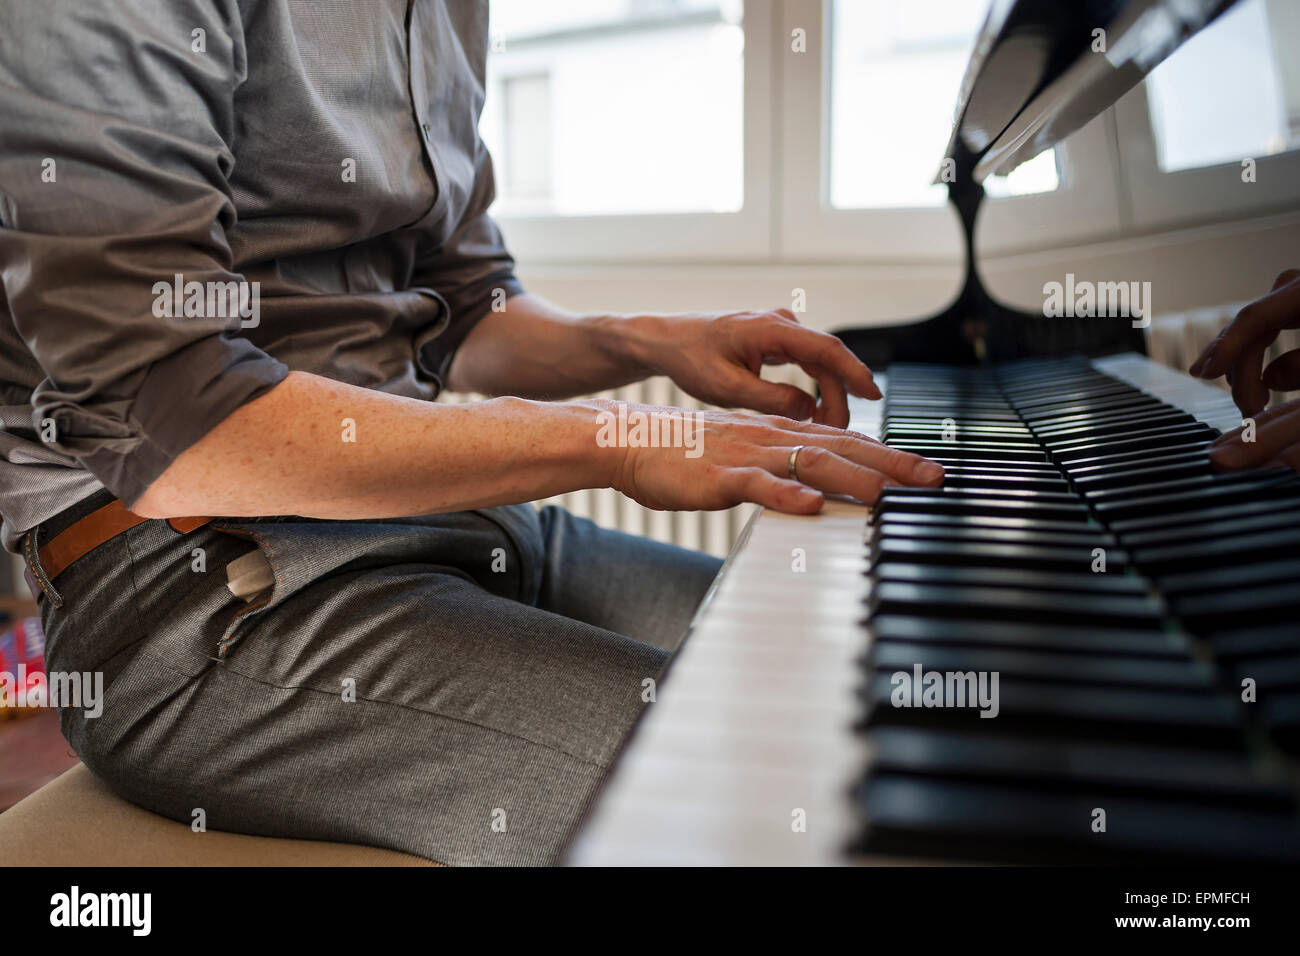 Man playing grand piano Stock Photo - Alamy